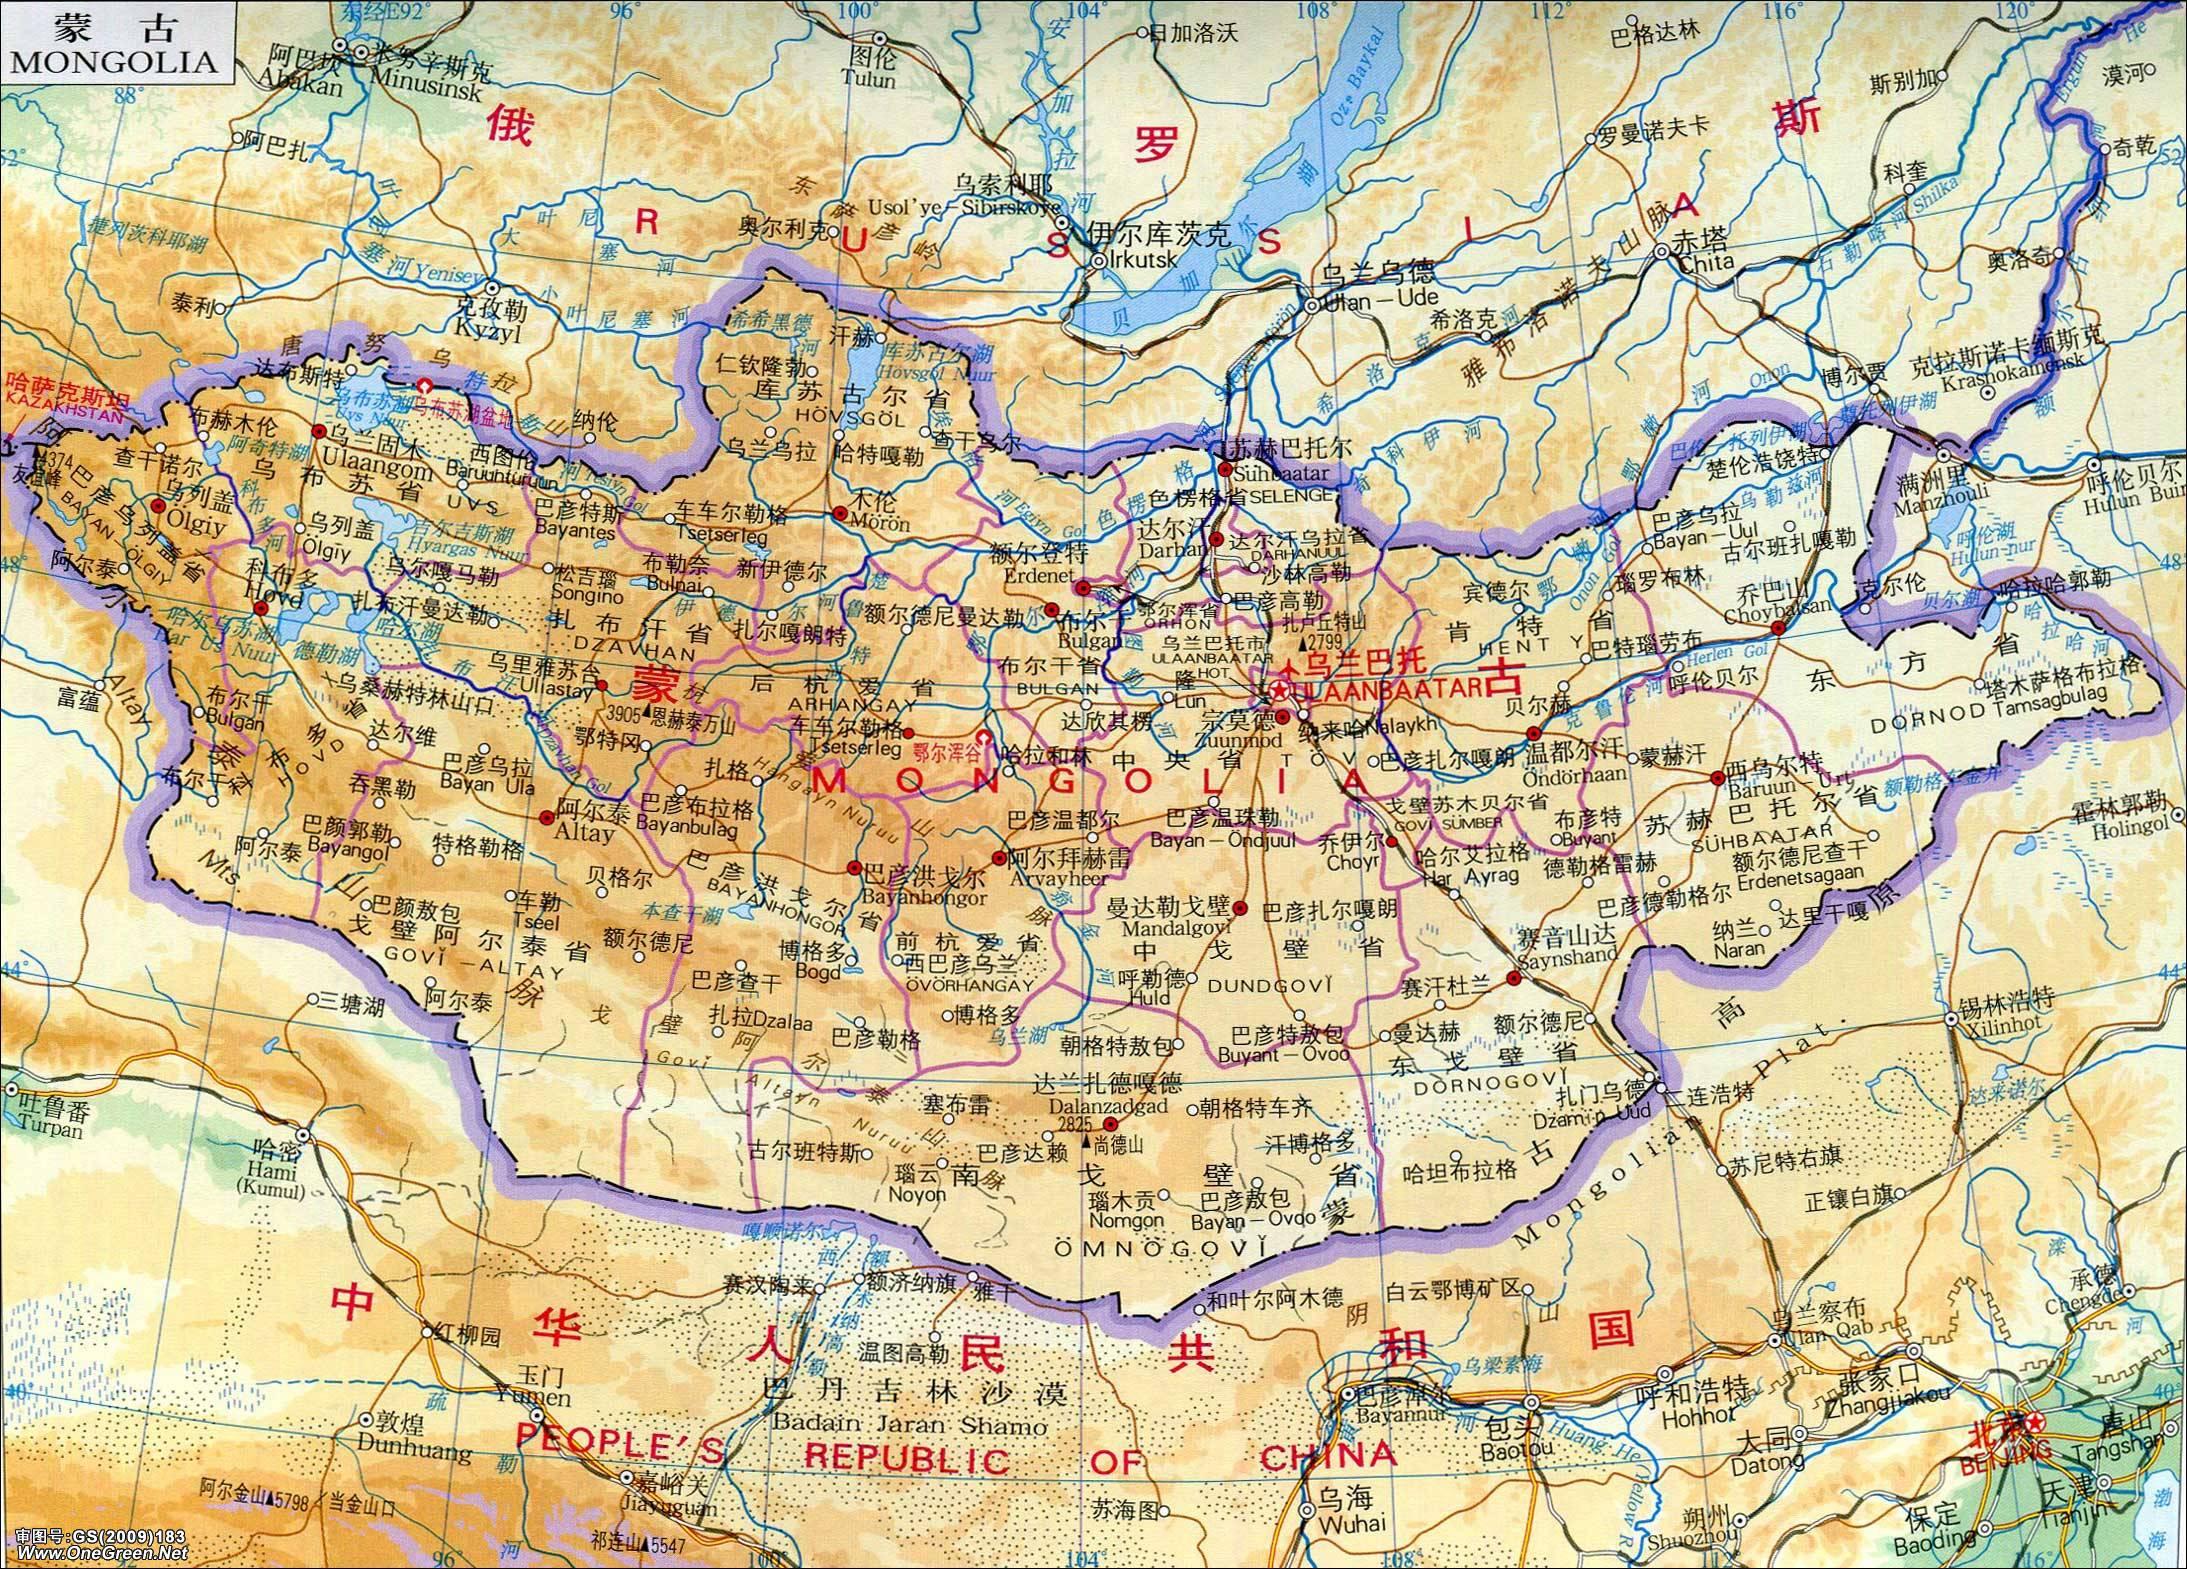 内蒙古地图全图高清版(2)|内蒙古地图全图高清版(2)全图高清版大图片|旅途风景图片网|www.visacits.com